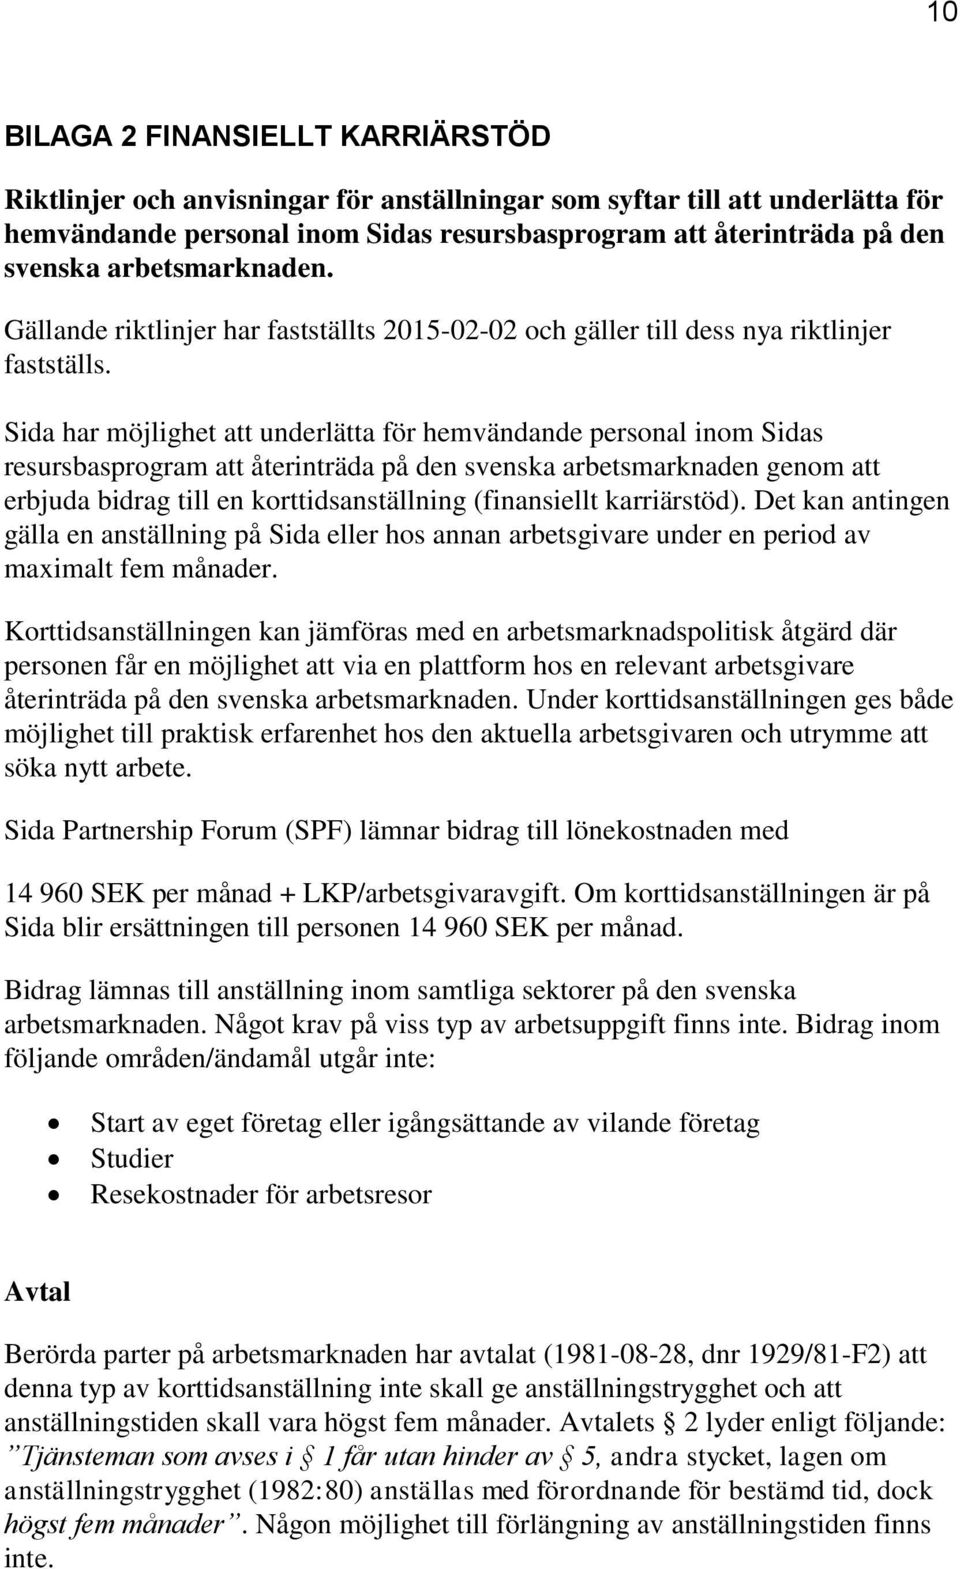 Sida har möjlighet att underlätta för hemvändande personal inom Sidas resursbasprogram att återinträda på den svenska arbetsmarknaden genom att erbjuda bidrag till en korttidsanställning (finansiellt